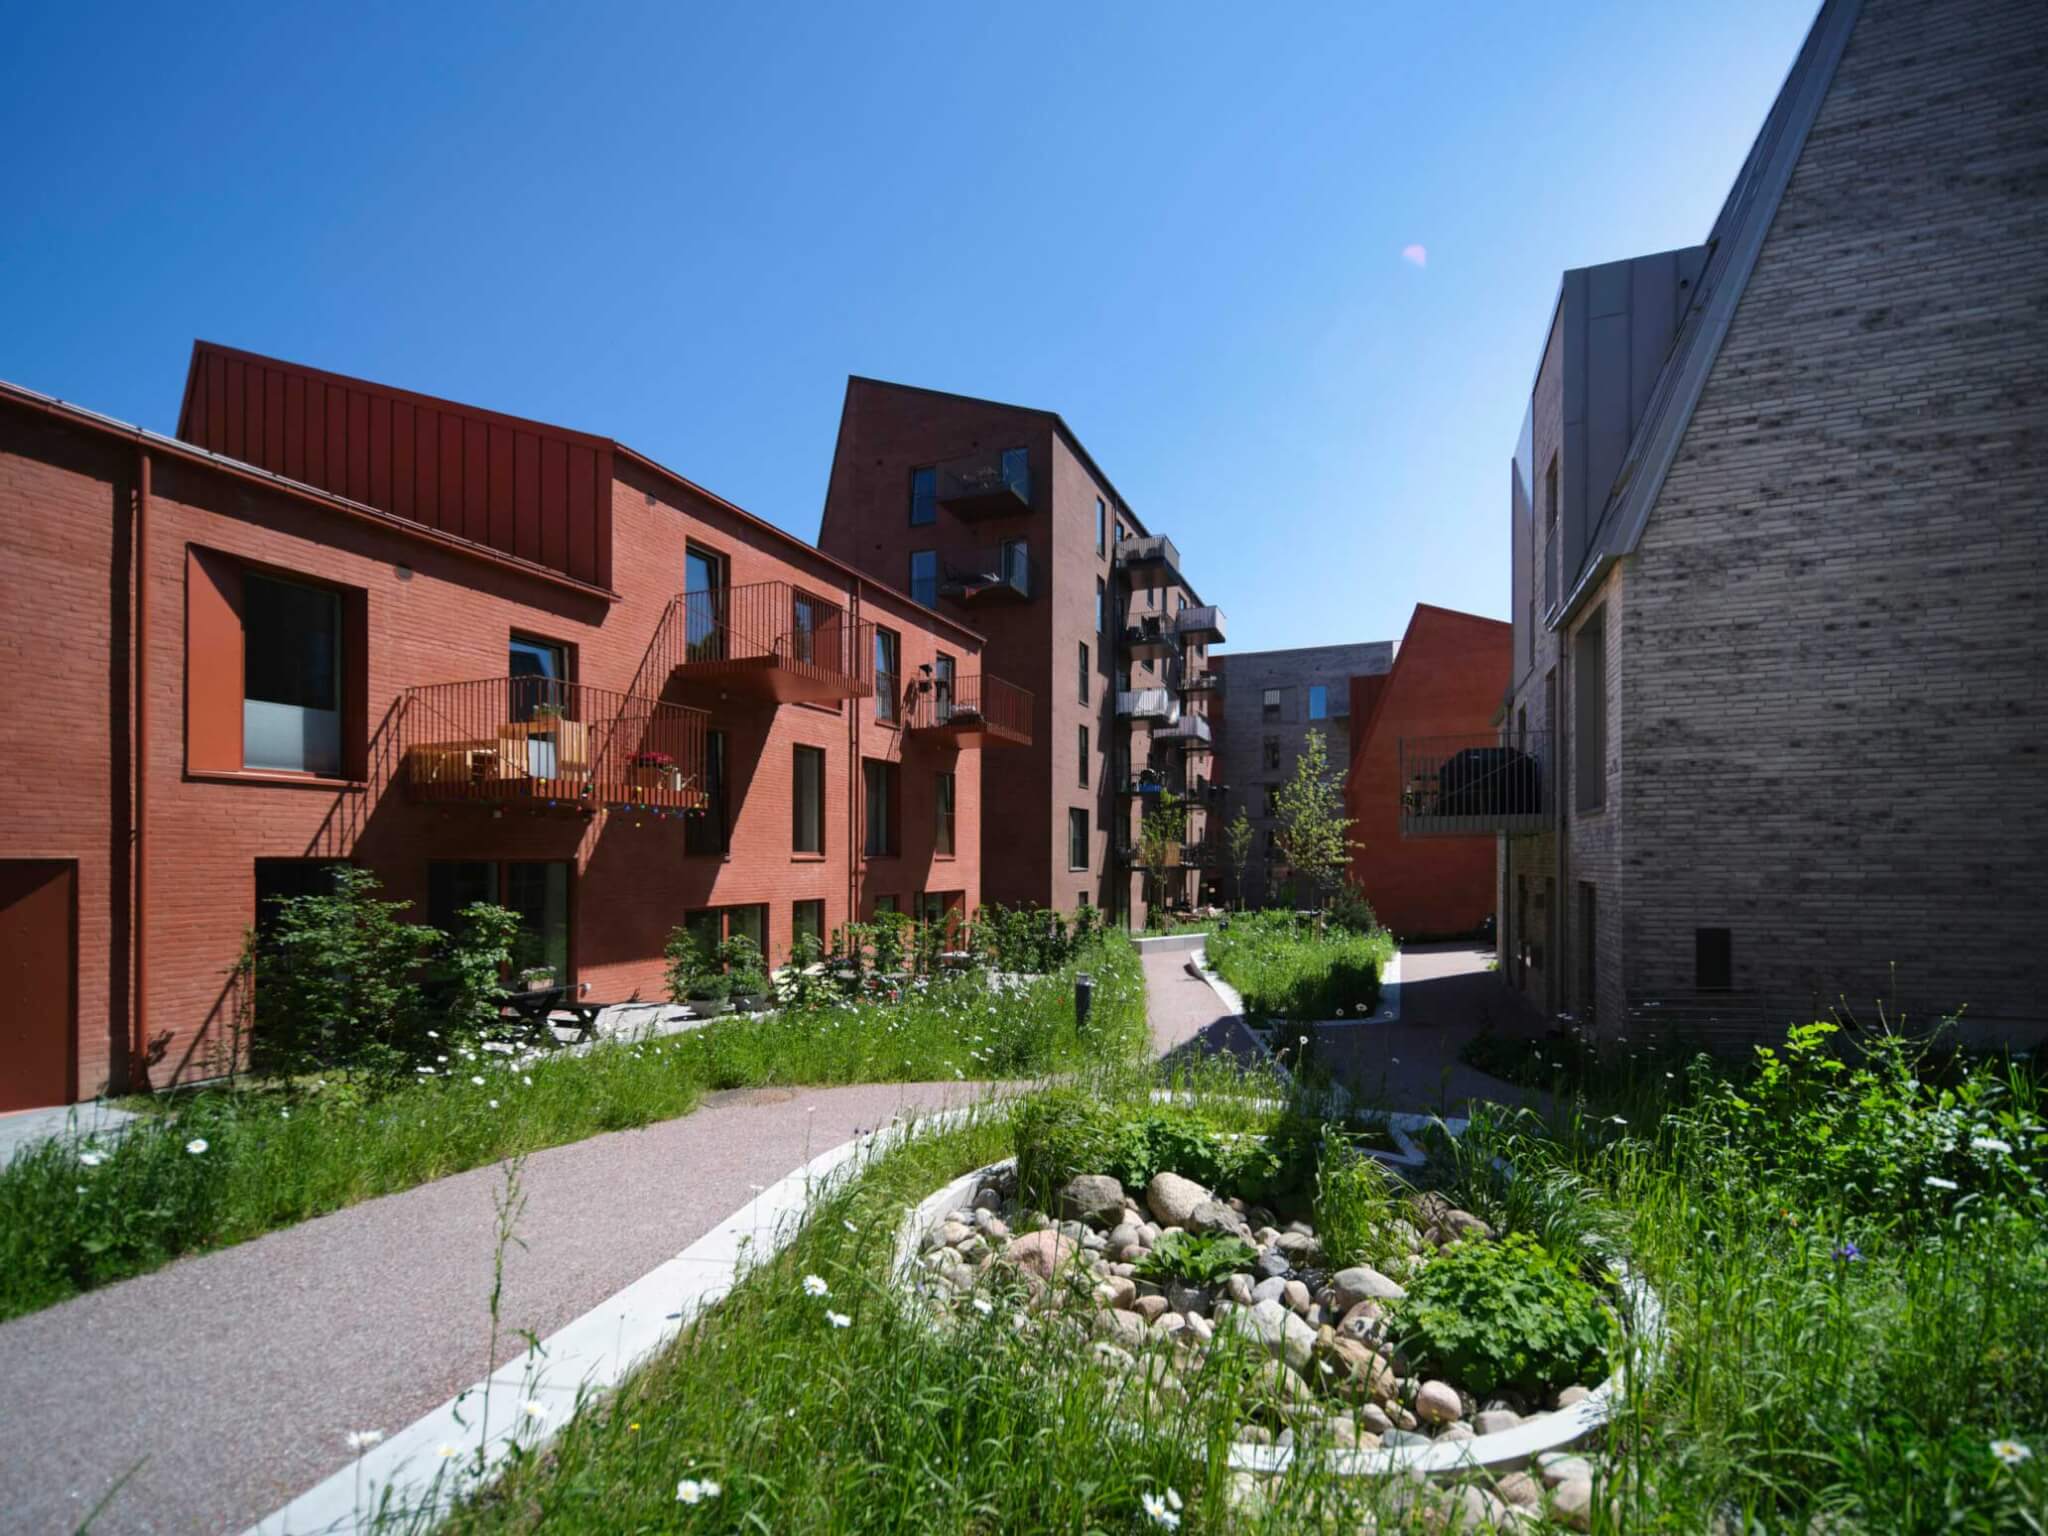 Centralt i Aarhus har Raundahl og Moesby i samarbejde med CEBRA udviklet et banebrydende og mangfoldigt boligprojekt